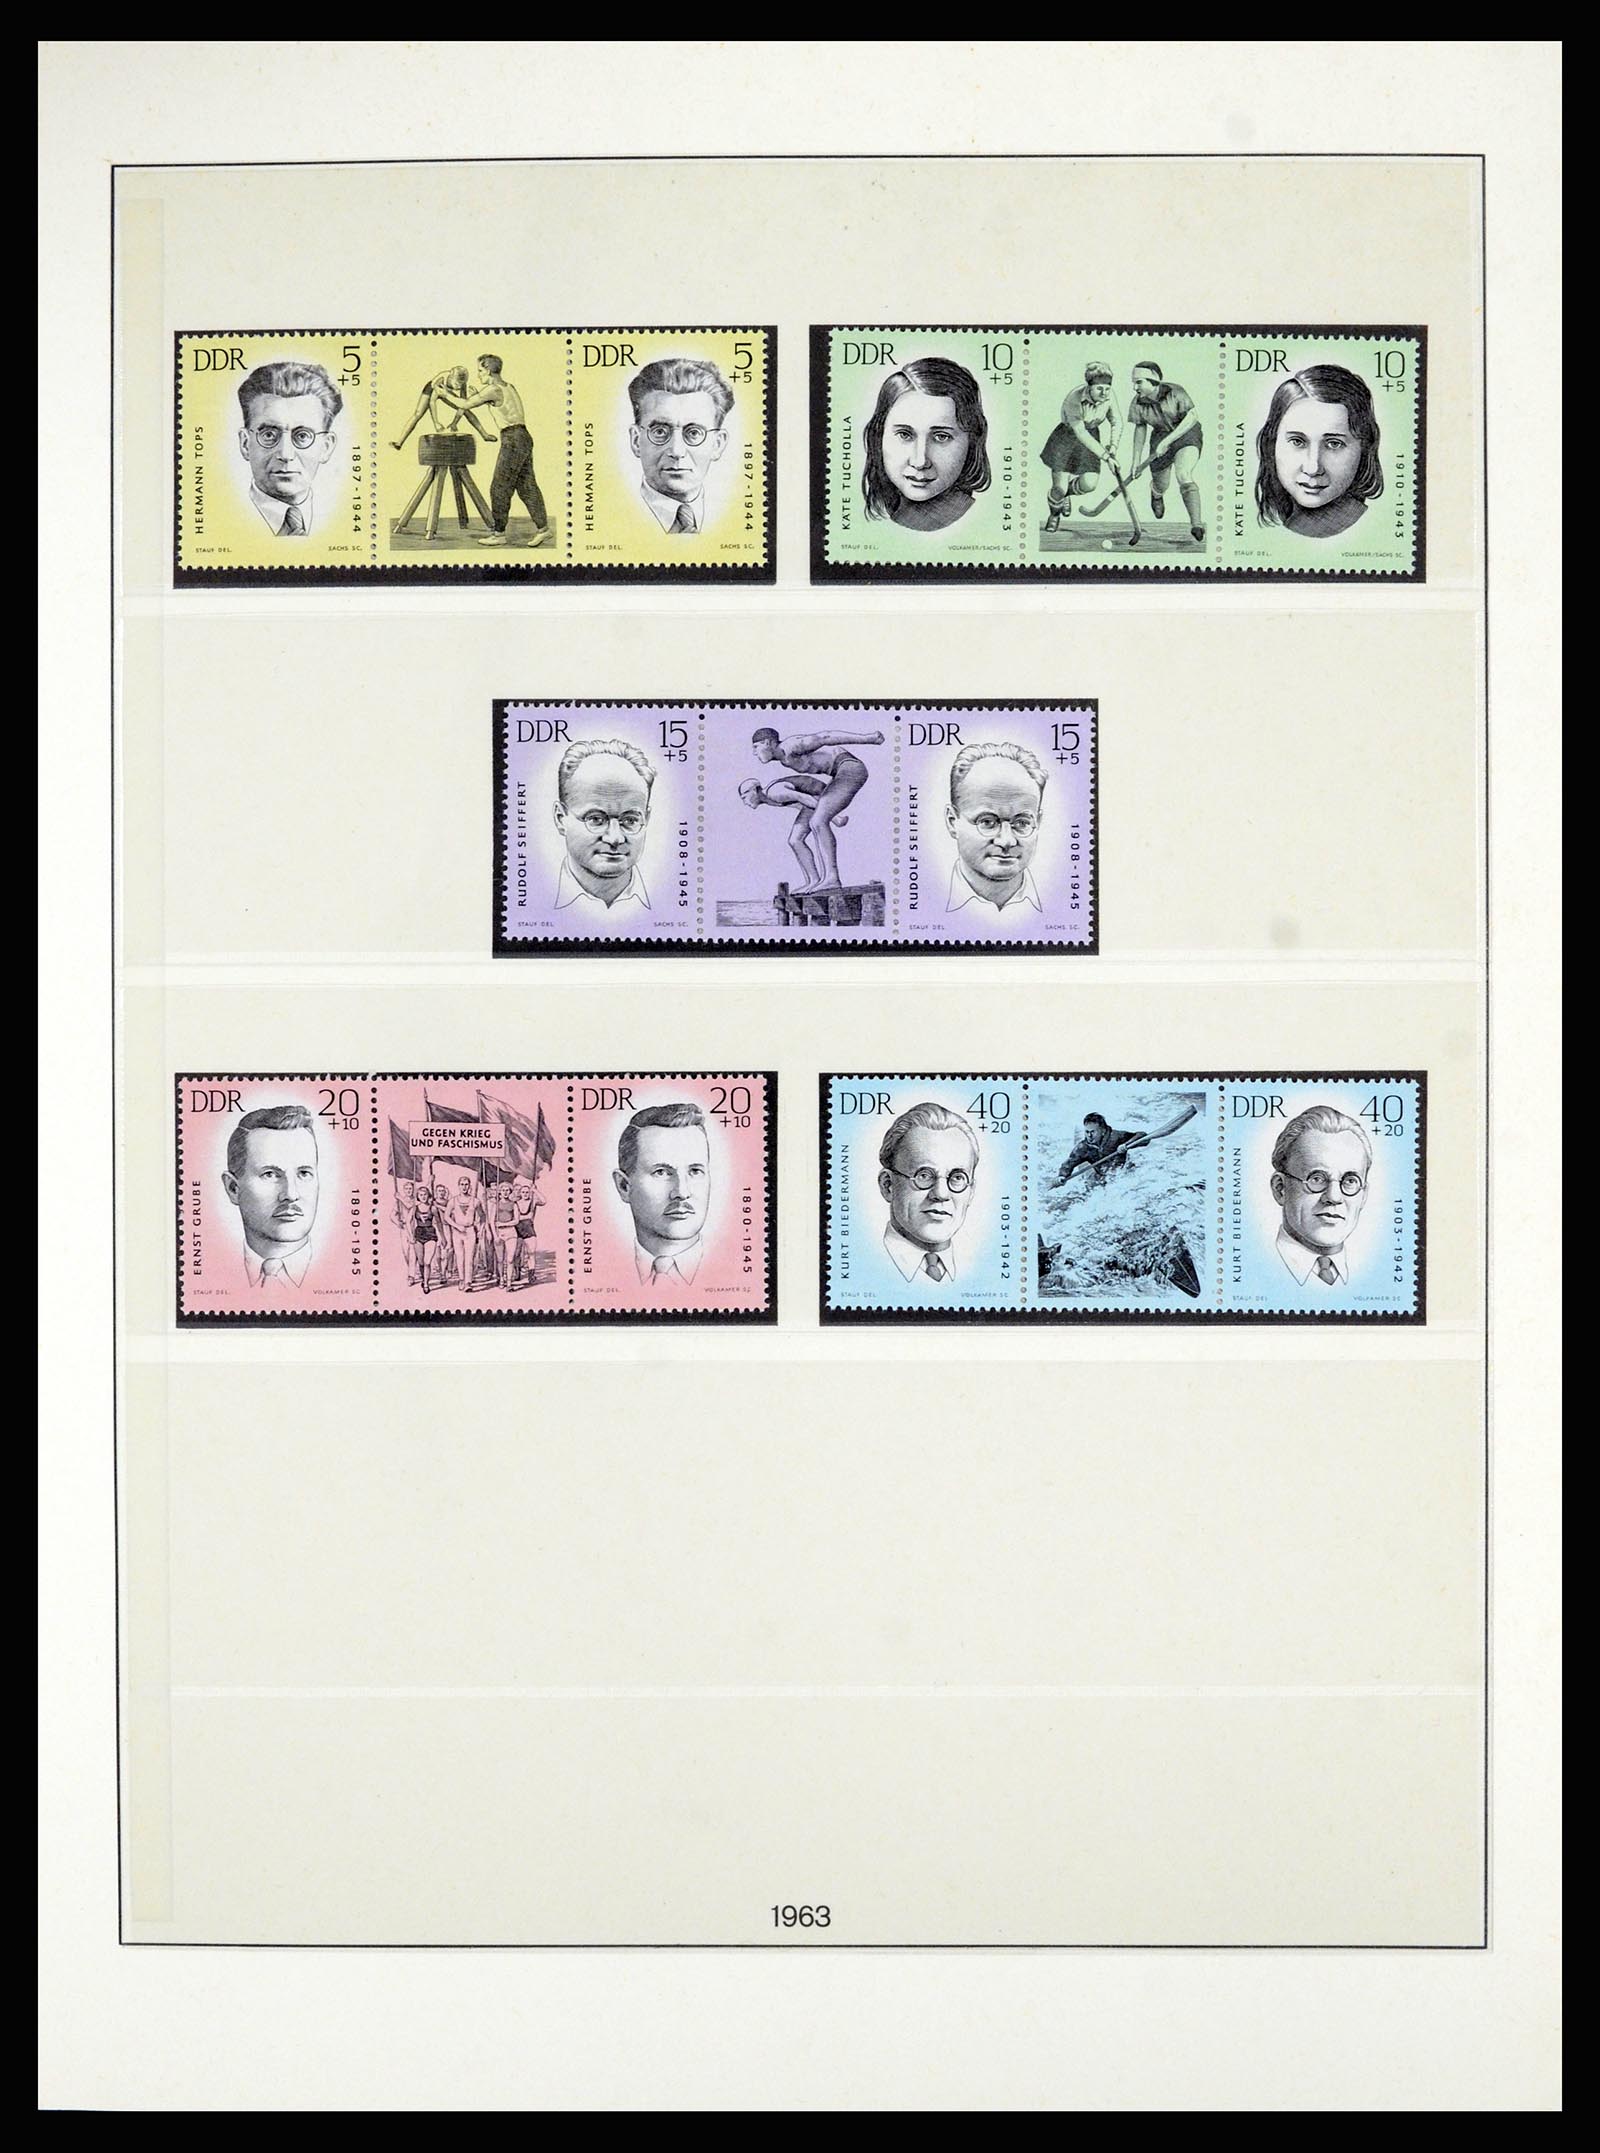 36879 022 - Postzegelverzameling 36879 DDR combinaties 1955-1981.